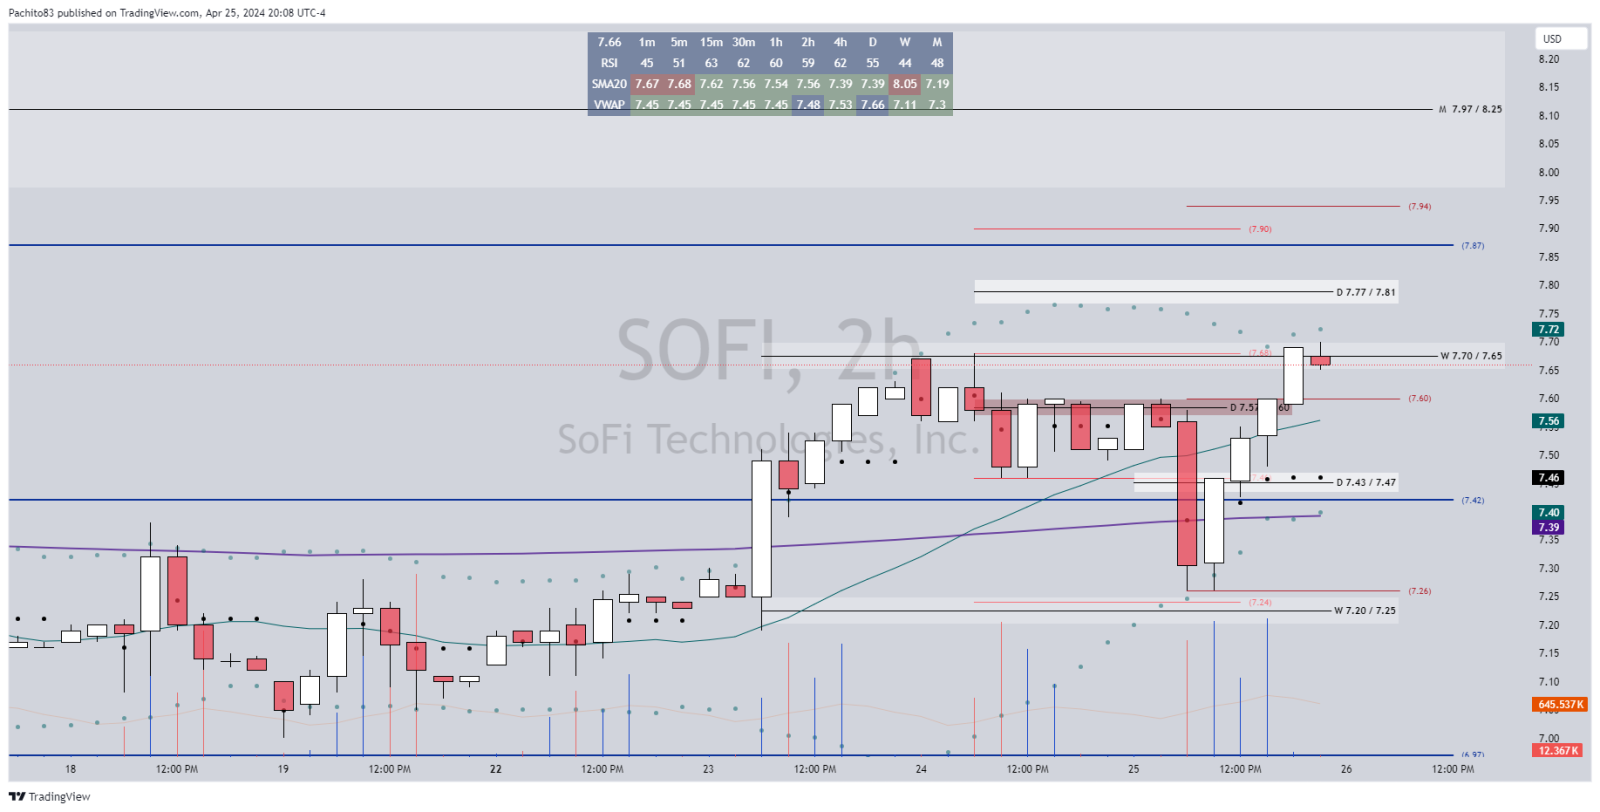 $SoFi Technologies (SOFI.US)$ 我會喜歡索菲 8 英寸以上！哈哈。它確實需要保持在 7.70/7.65 以上才能繼續到 7.77/7.81 和可能 7.87